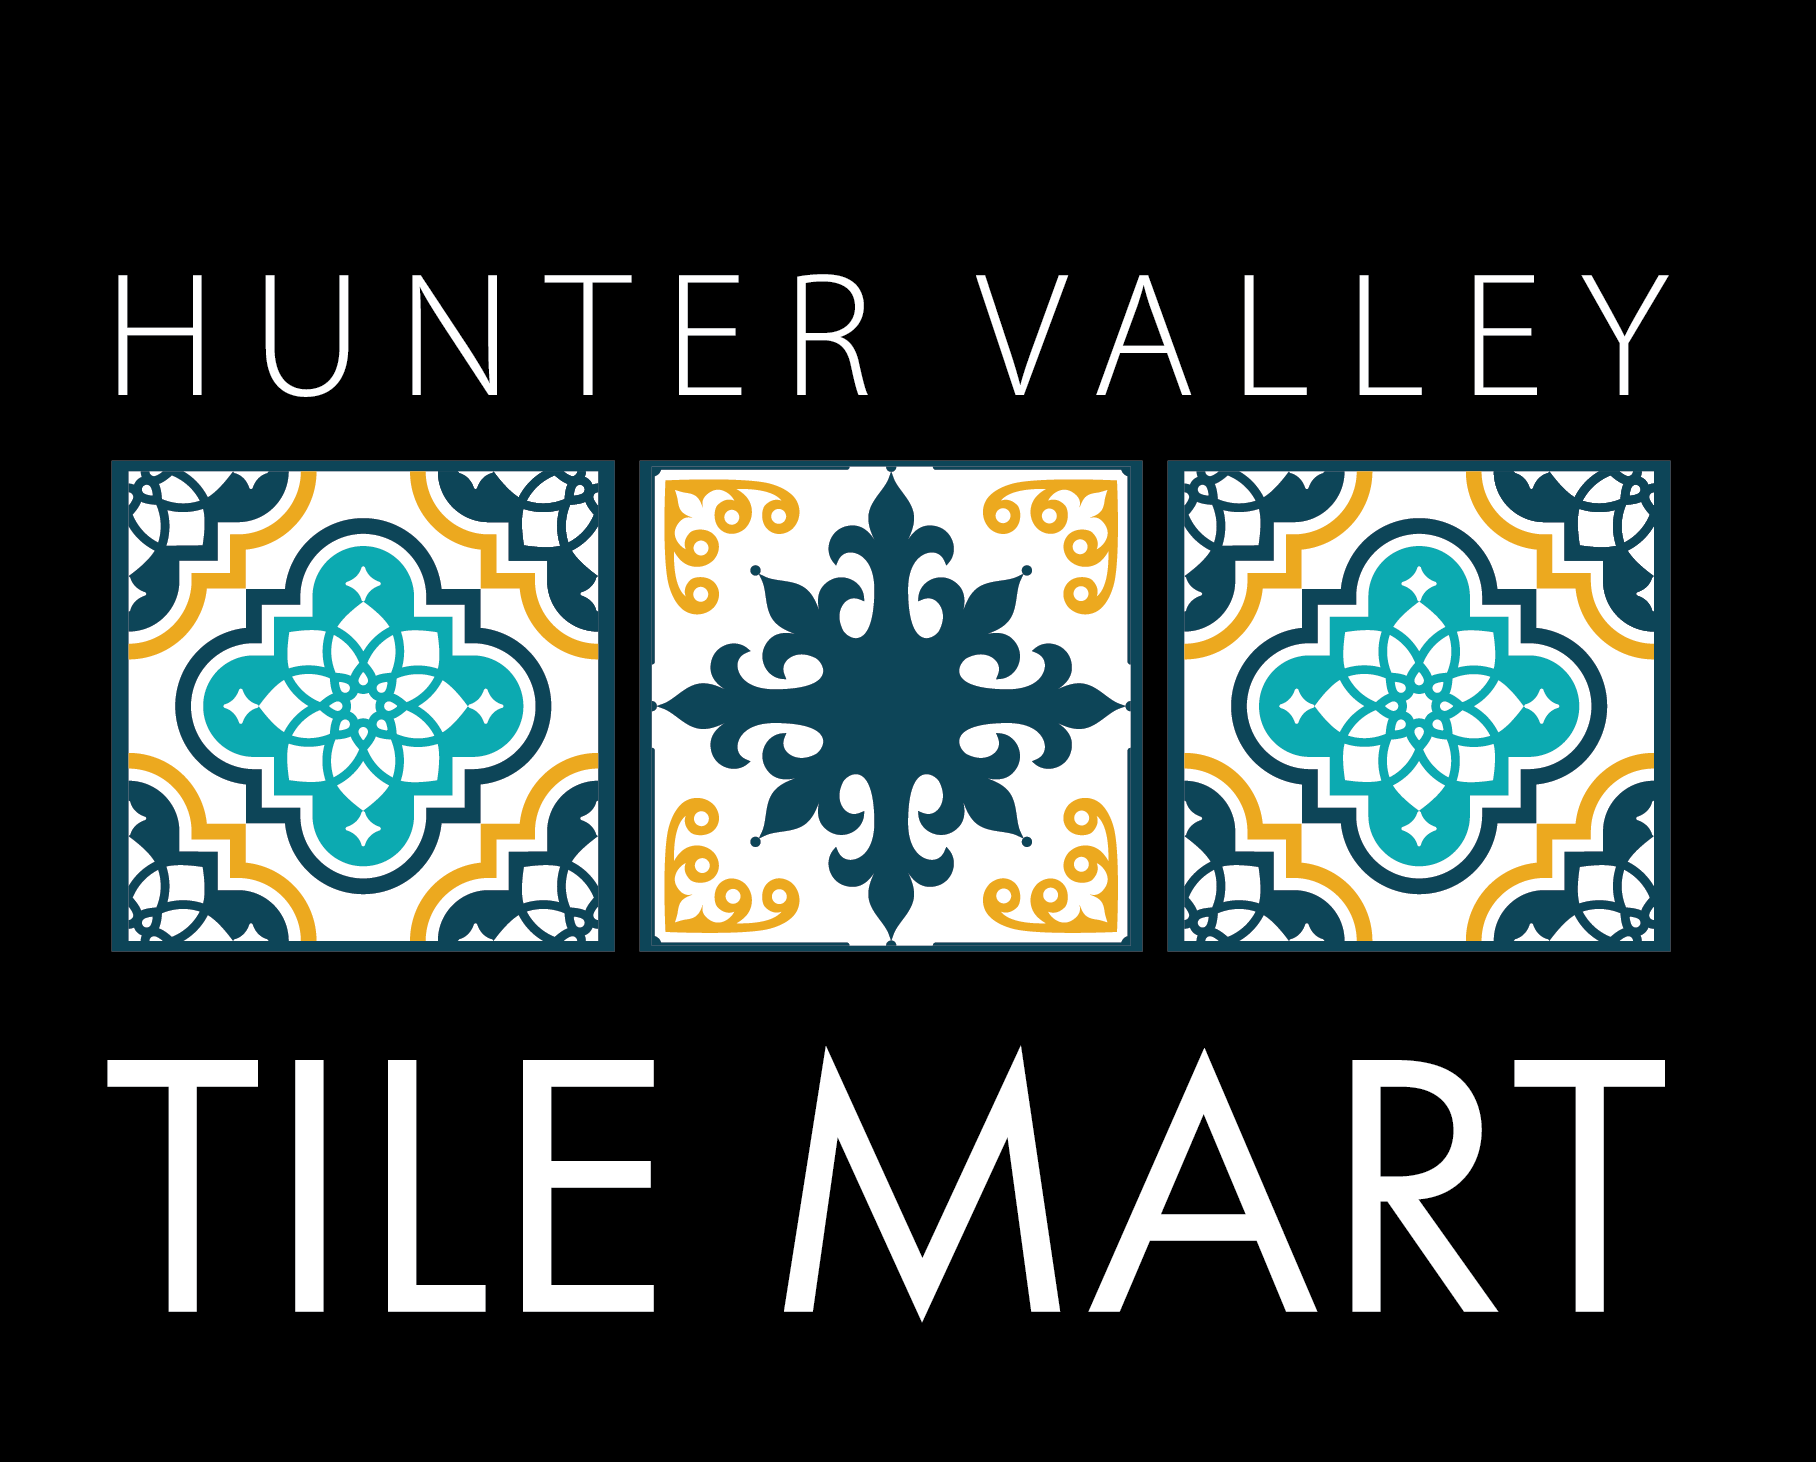 Hunter Valley Tile Mart: Local Tile Shop in Hunter Region